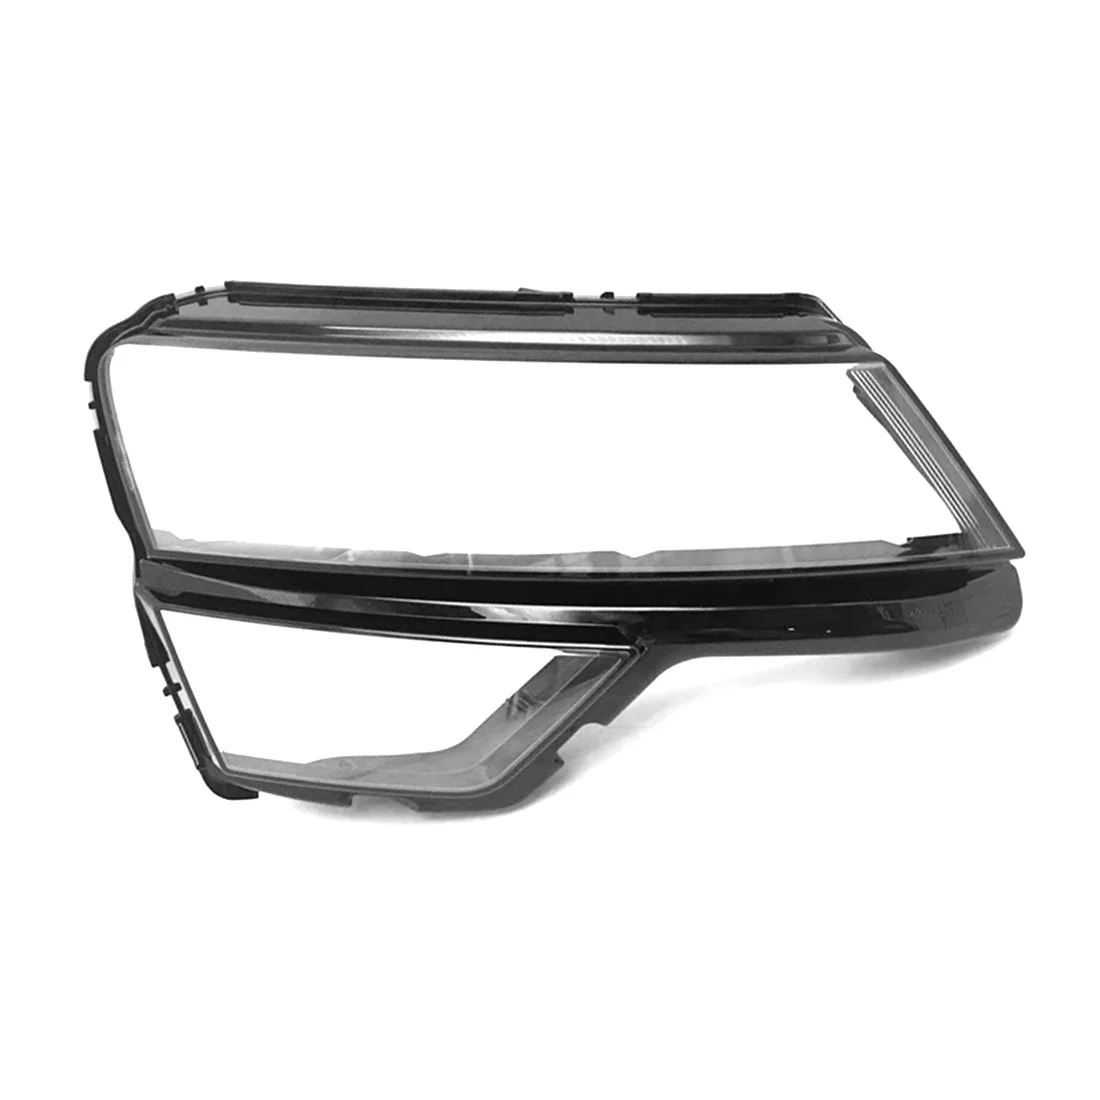 

For Skoda Karoq 2018-2022 Right Headlight Shell Front Head Light Lamp Shade Transparent Lens Glass Mask Headlight Cover